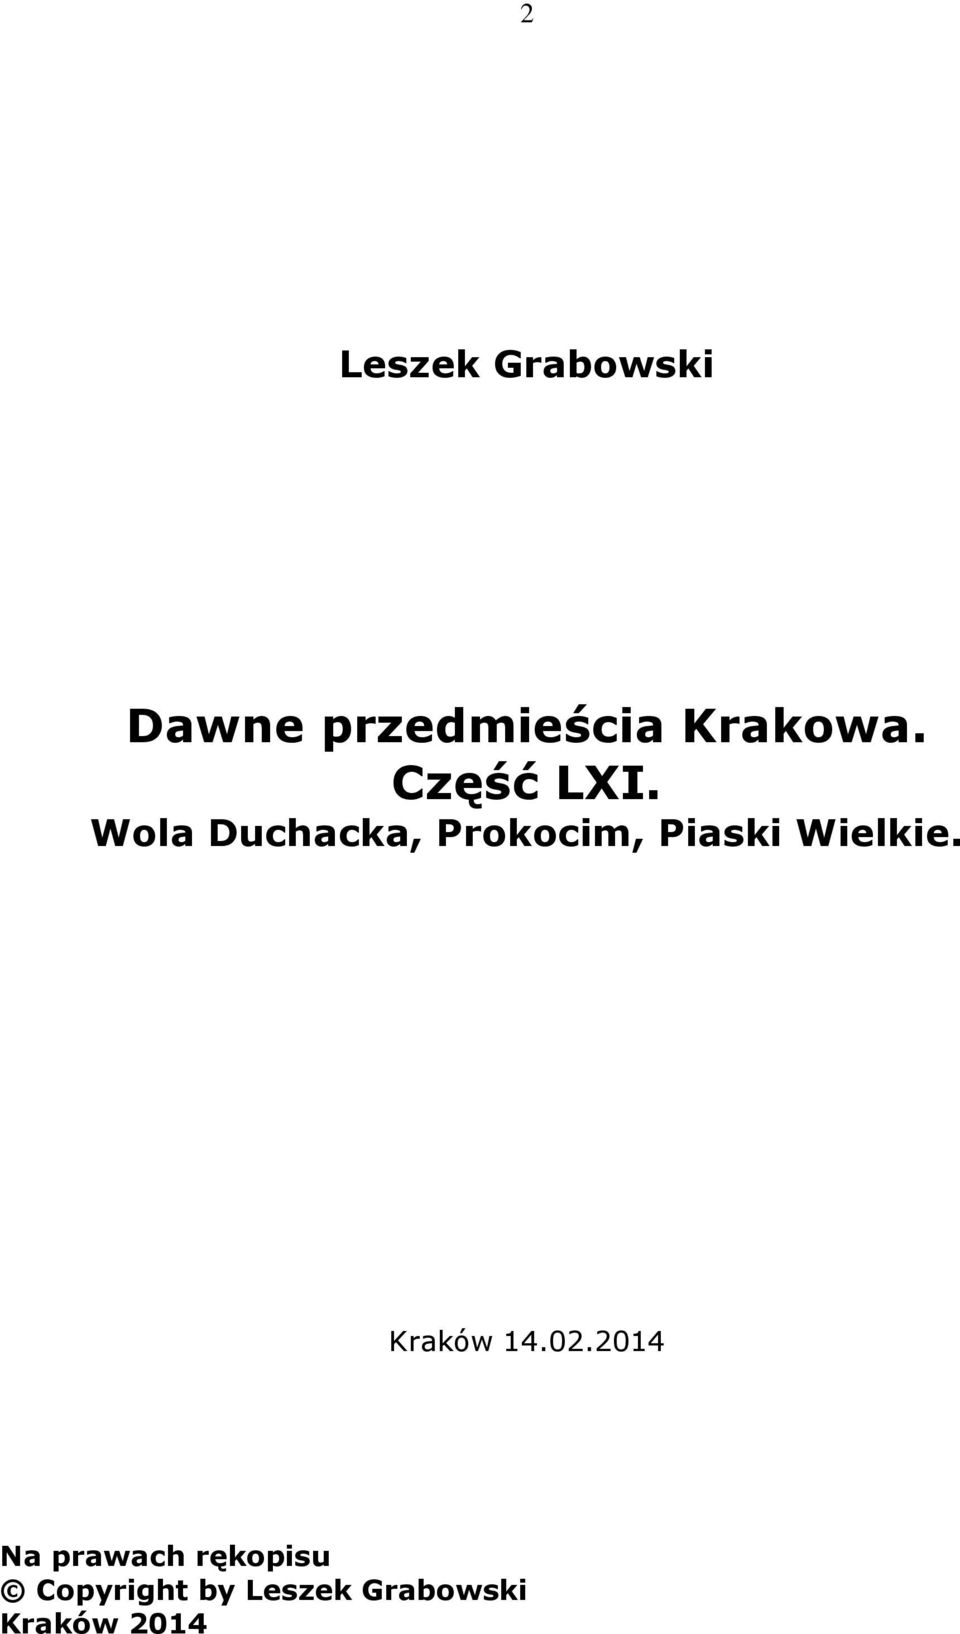 Wola Duchacka, Prokocim, Piaski Wielkie.